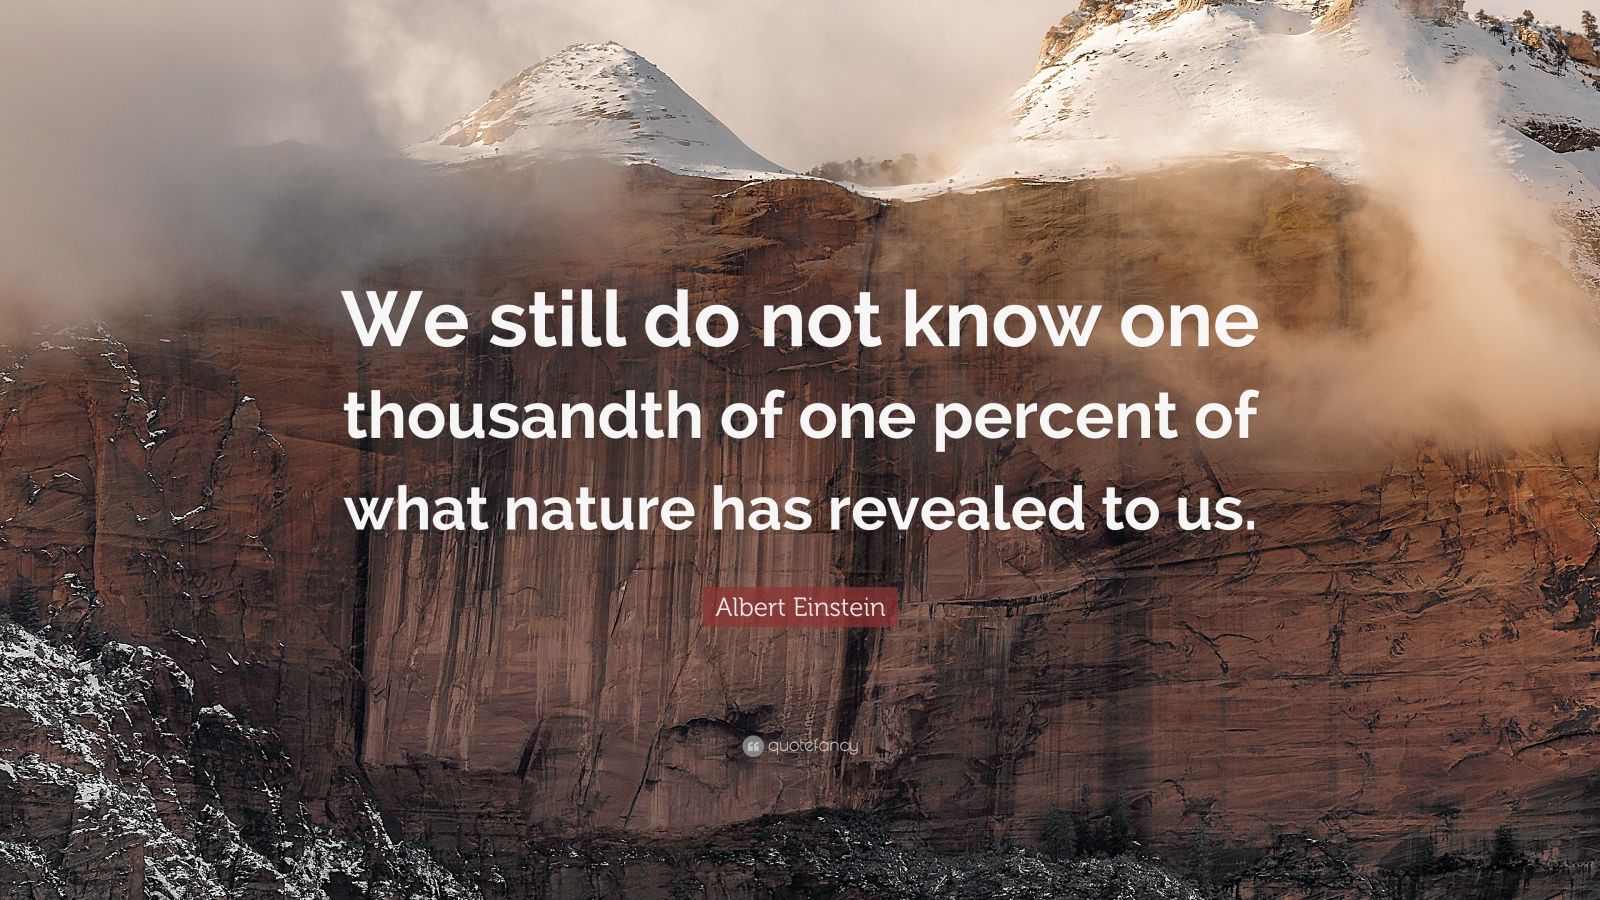 Albert Einstein Quote: “We still do not know one thousandth of one ...